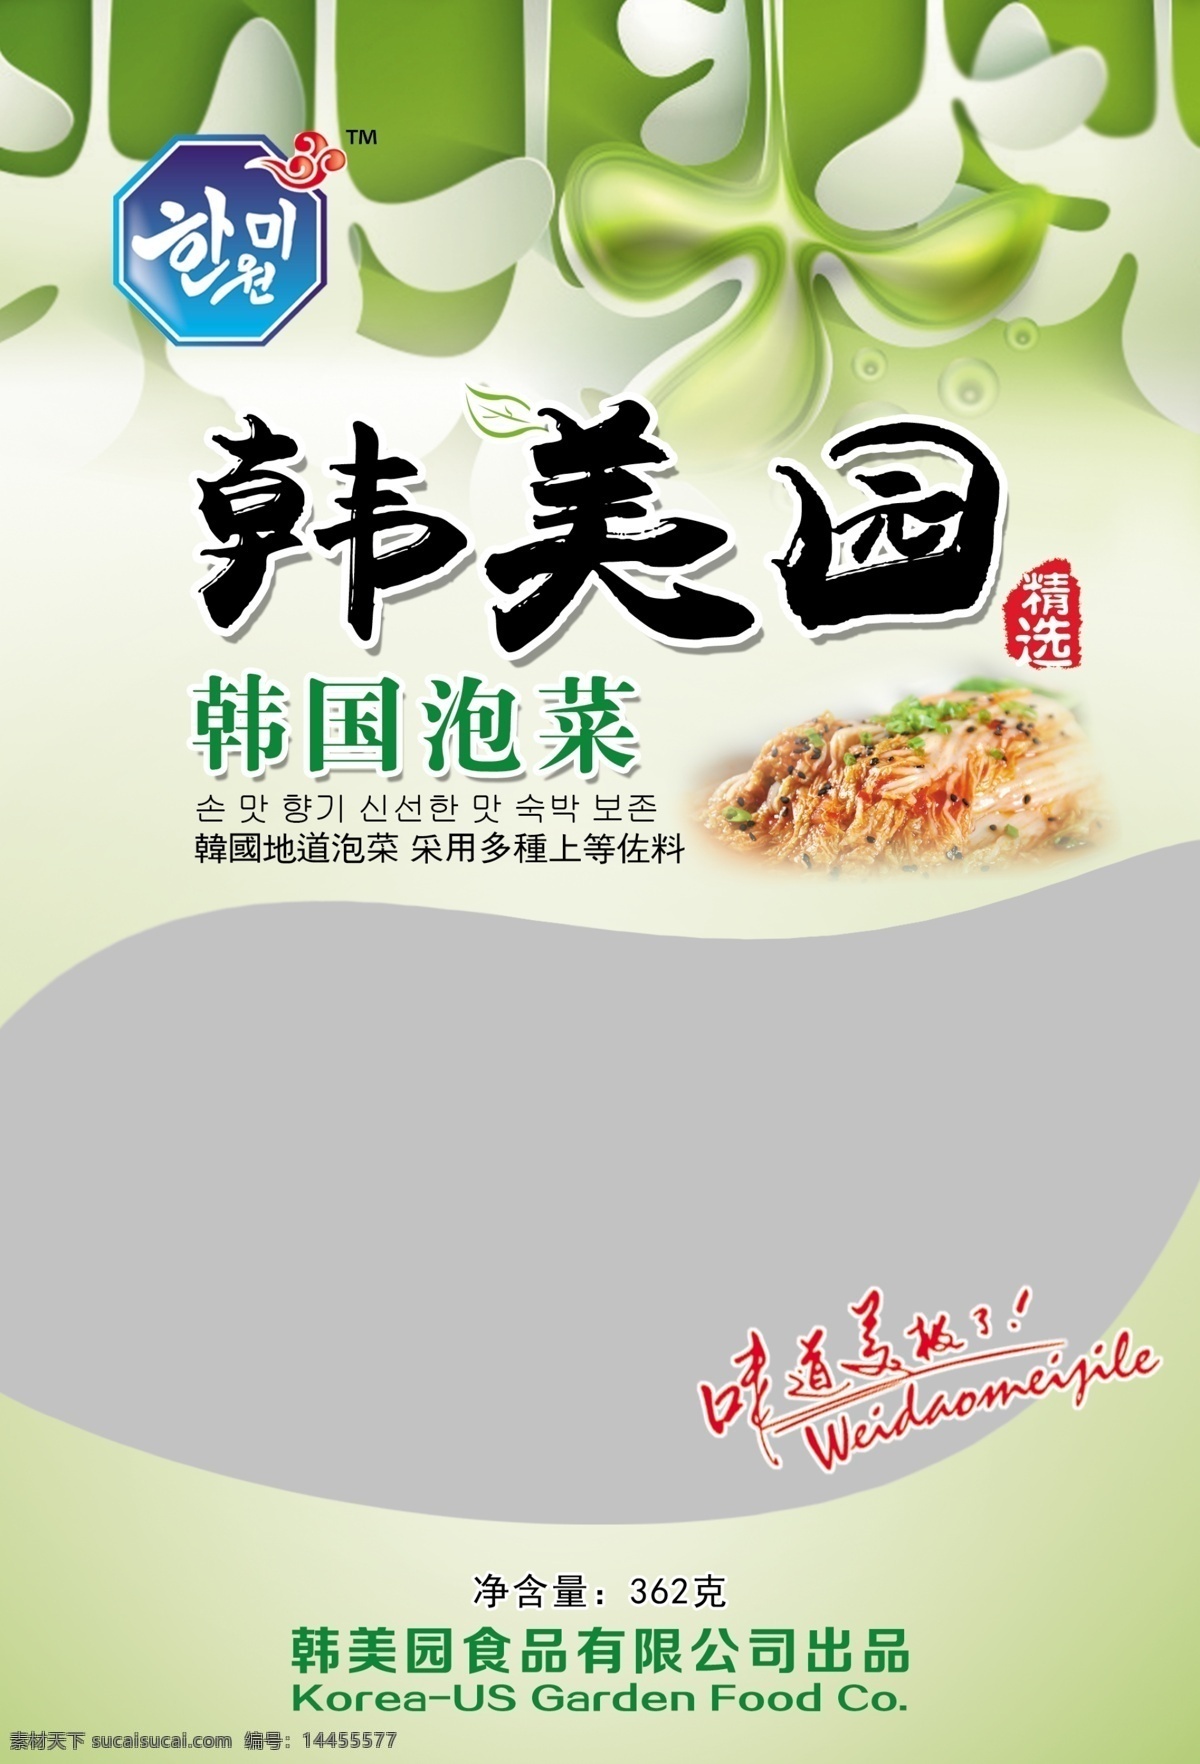 泡菜包装设计 模版下载 包装设计 泡菜 韩国包装设计 白色